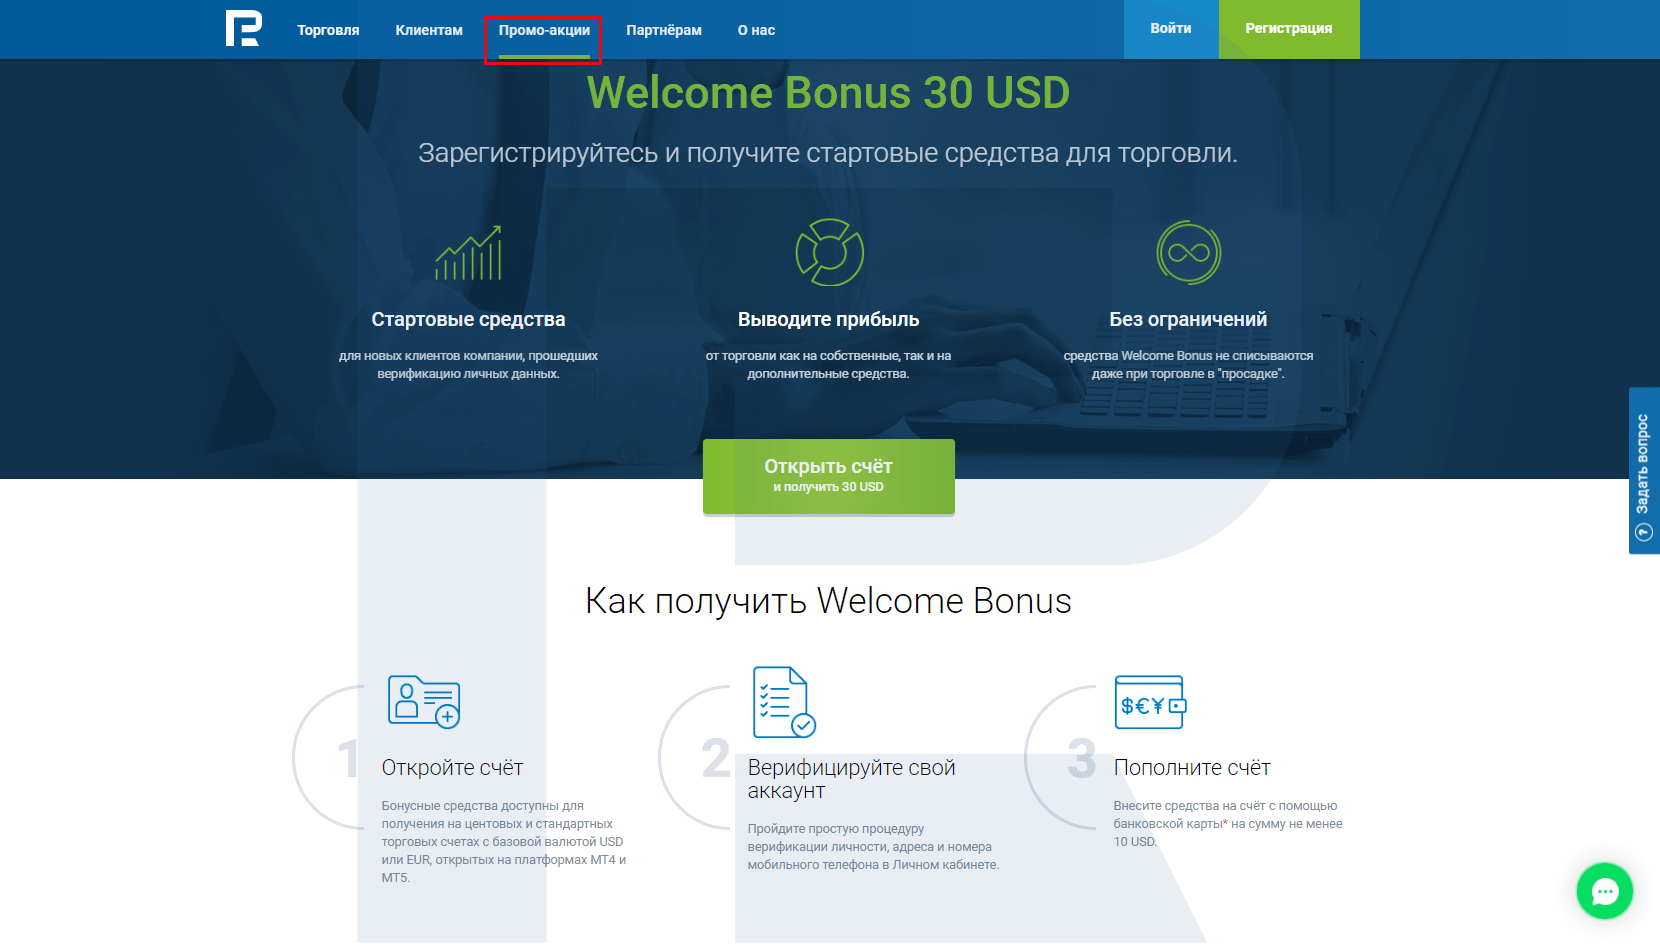 Бездепозитный бонус с выводом 30 USD